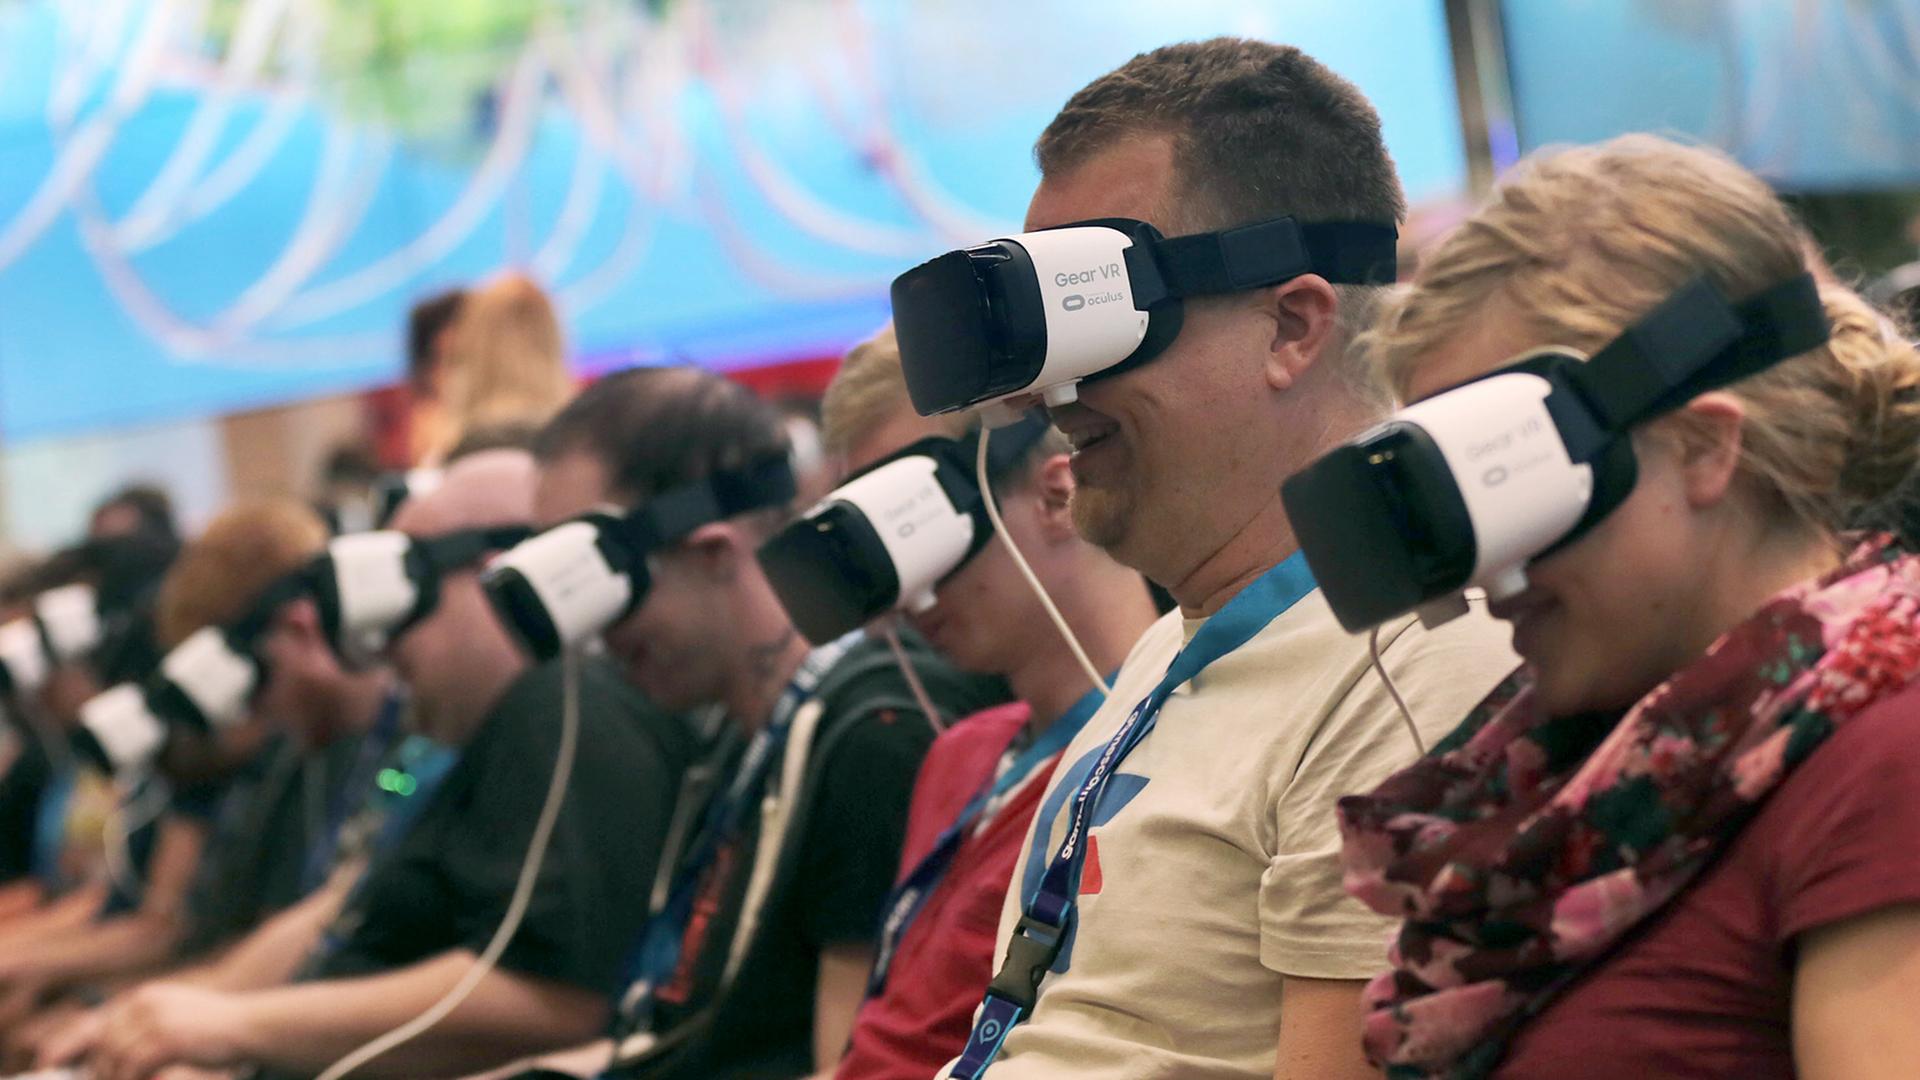 Besucher der Gamescom 2016 in Köln tragen VR-Brillen. 17.8.2016